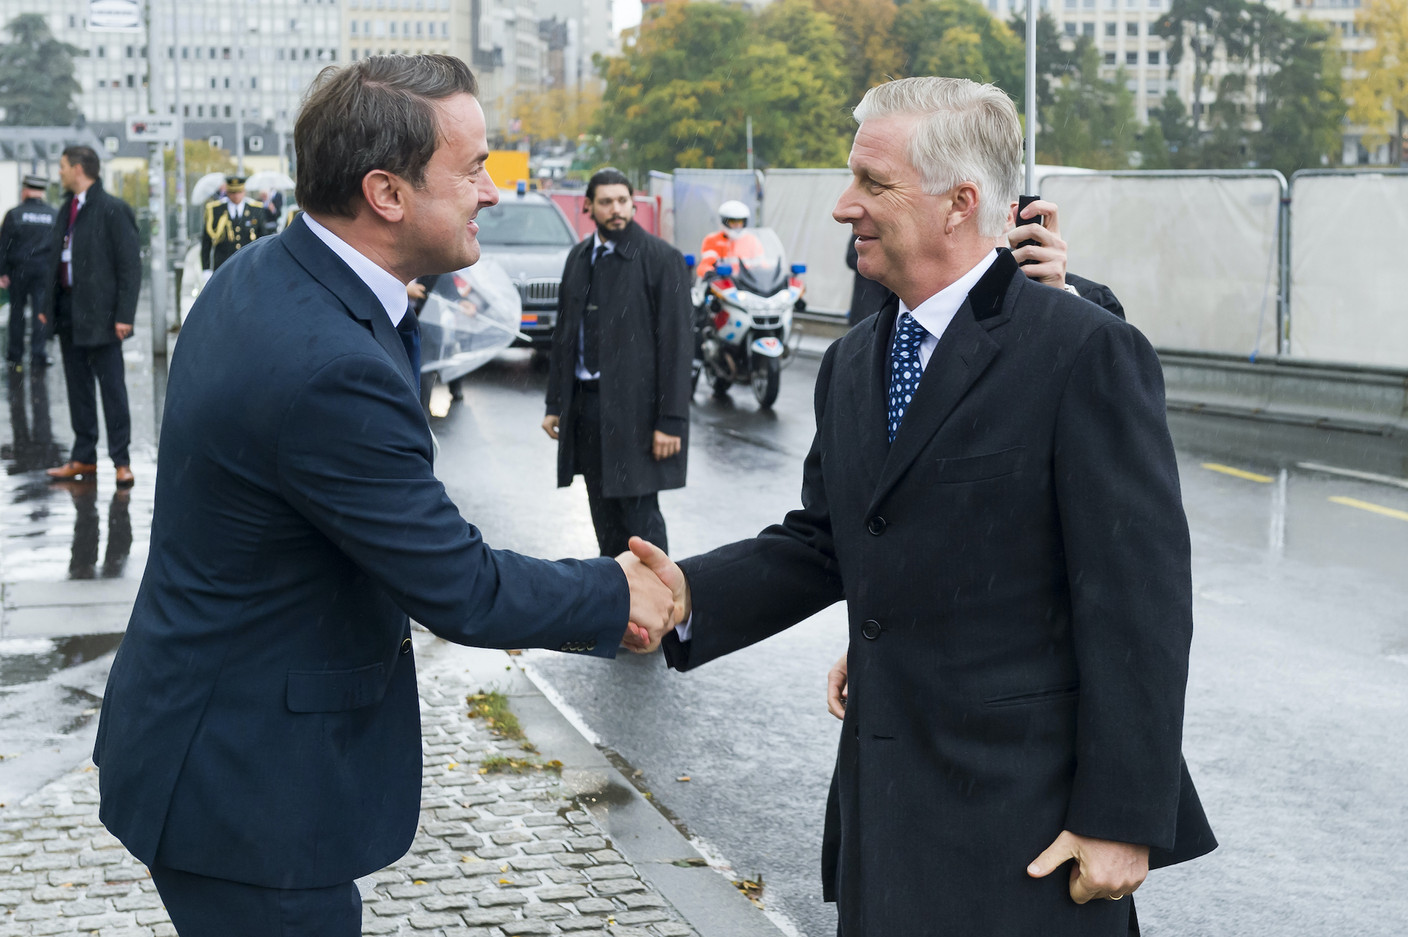 Le Premier ministre Xavier Bettel a accueilli le Roi Philippe au Monument national de la solidarité. (Photo: SIP /Jean-Christophe Verhaegen)